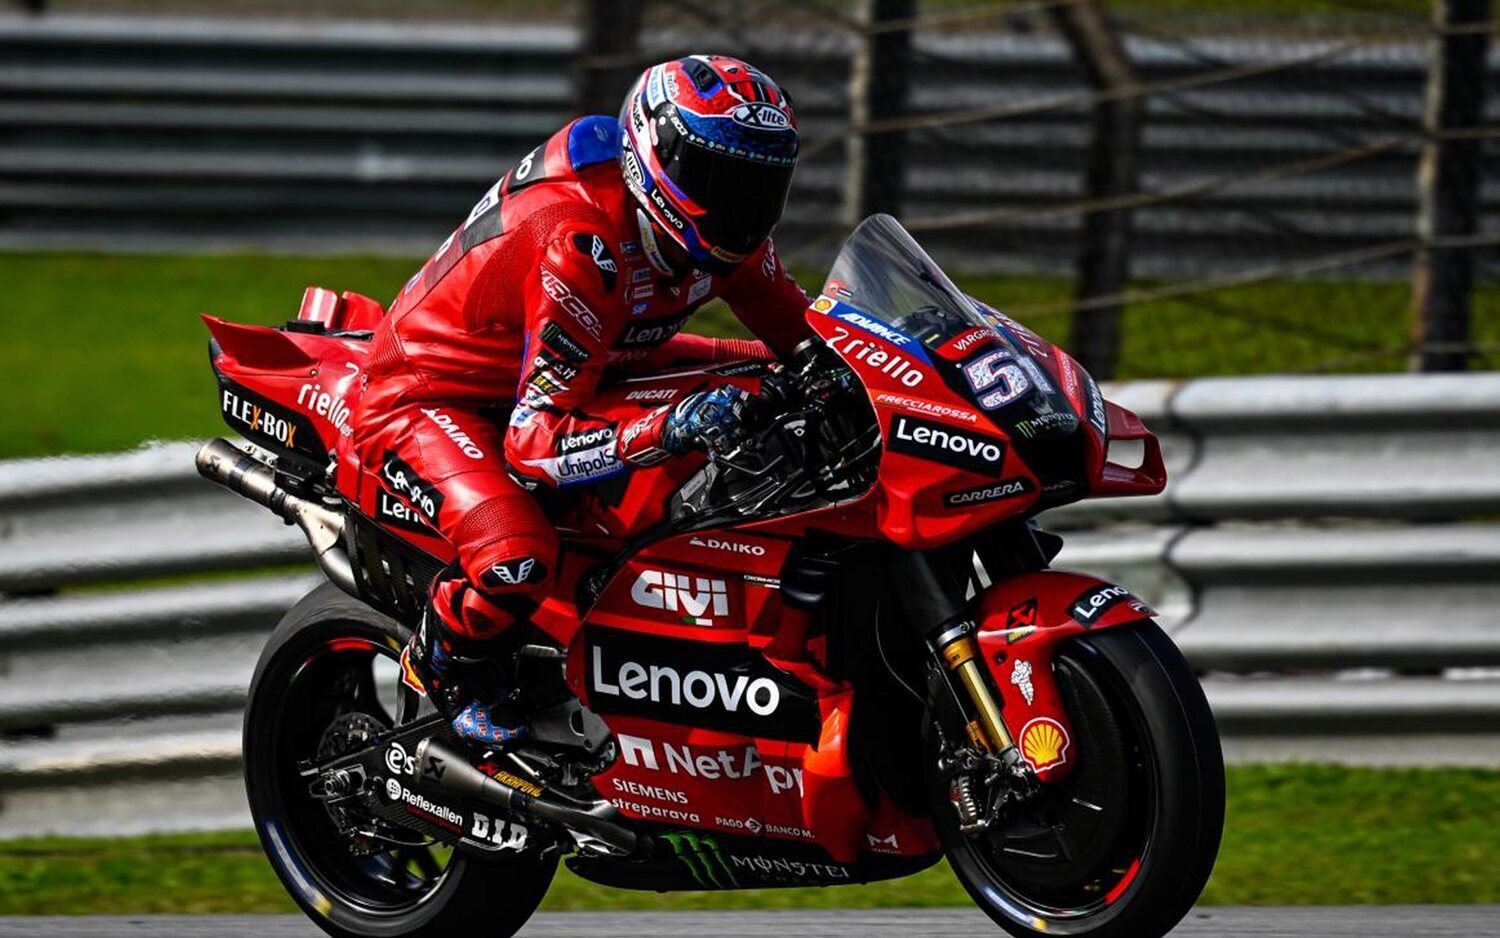 Shakedown Sepang: Pirro pone a Ducati al frente en el último dia